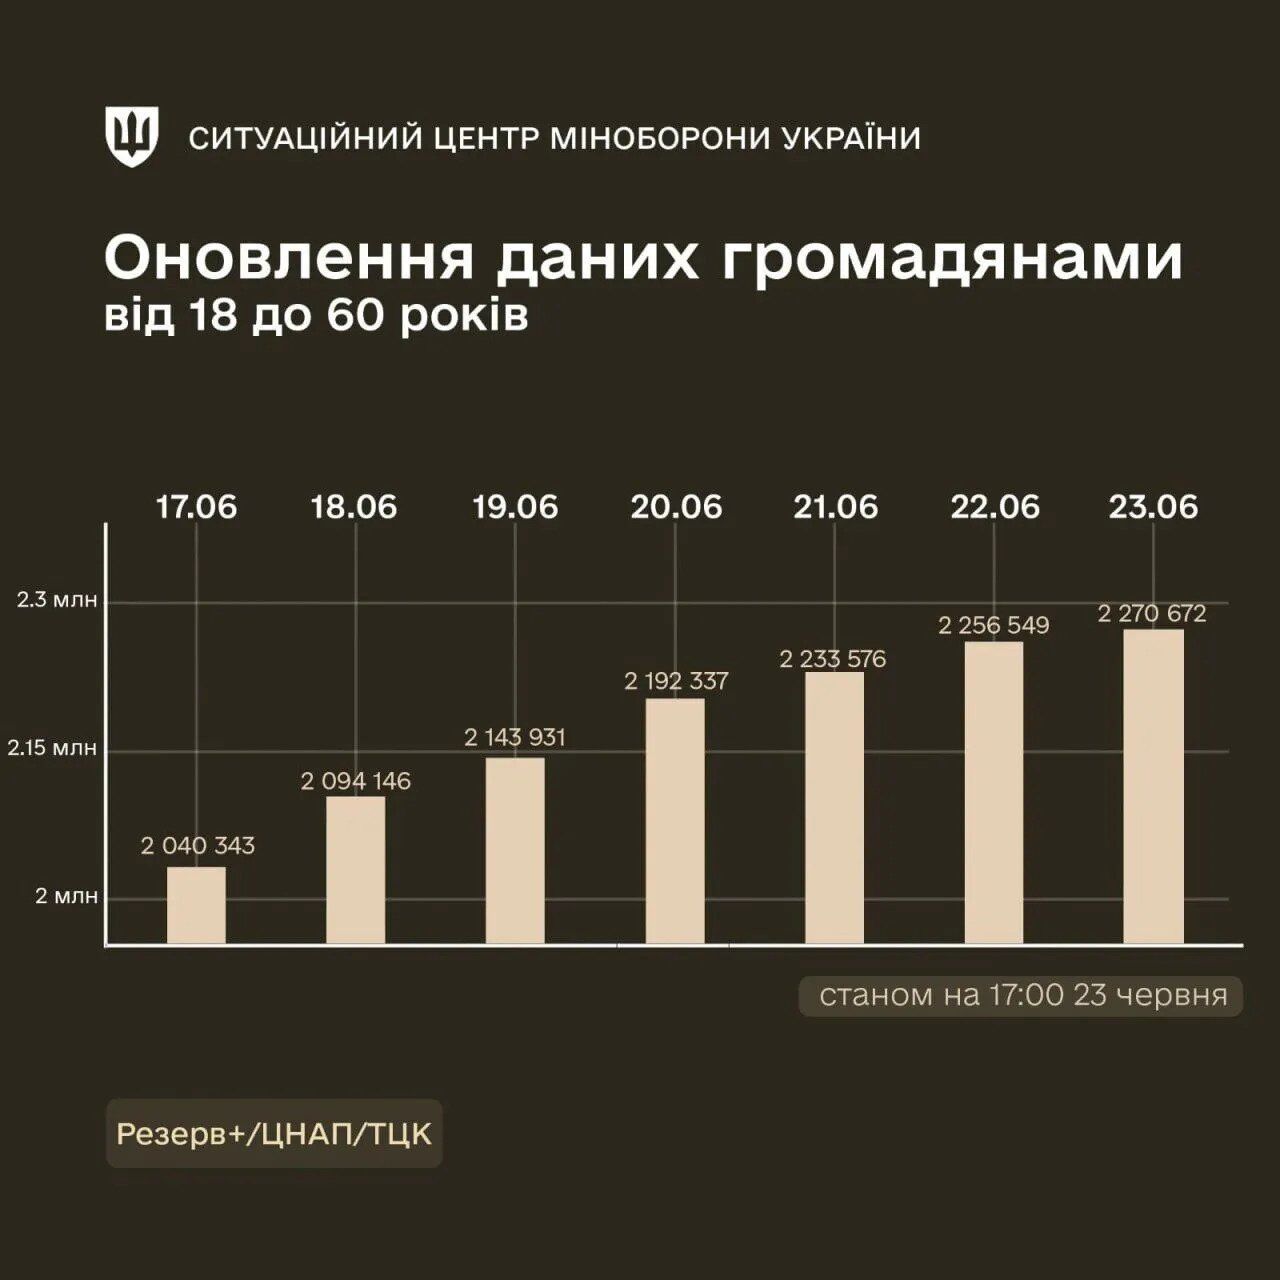 Более миллиона – пригодны к службе: в Минобороны рассказали, сколько украинцев обновили данные через "Резерв+"